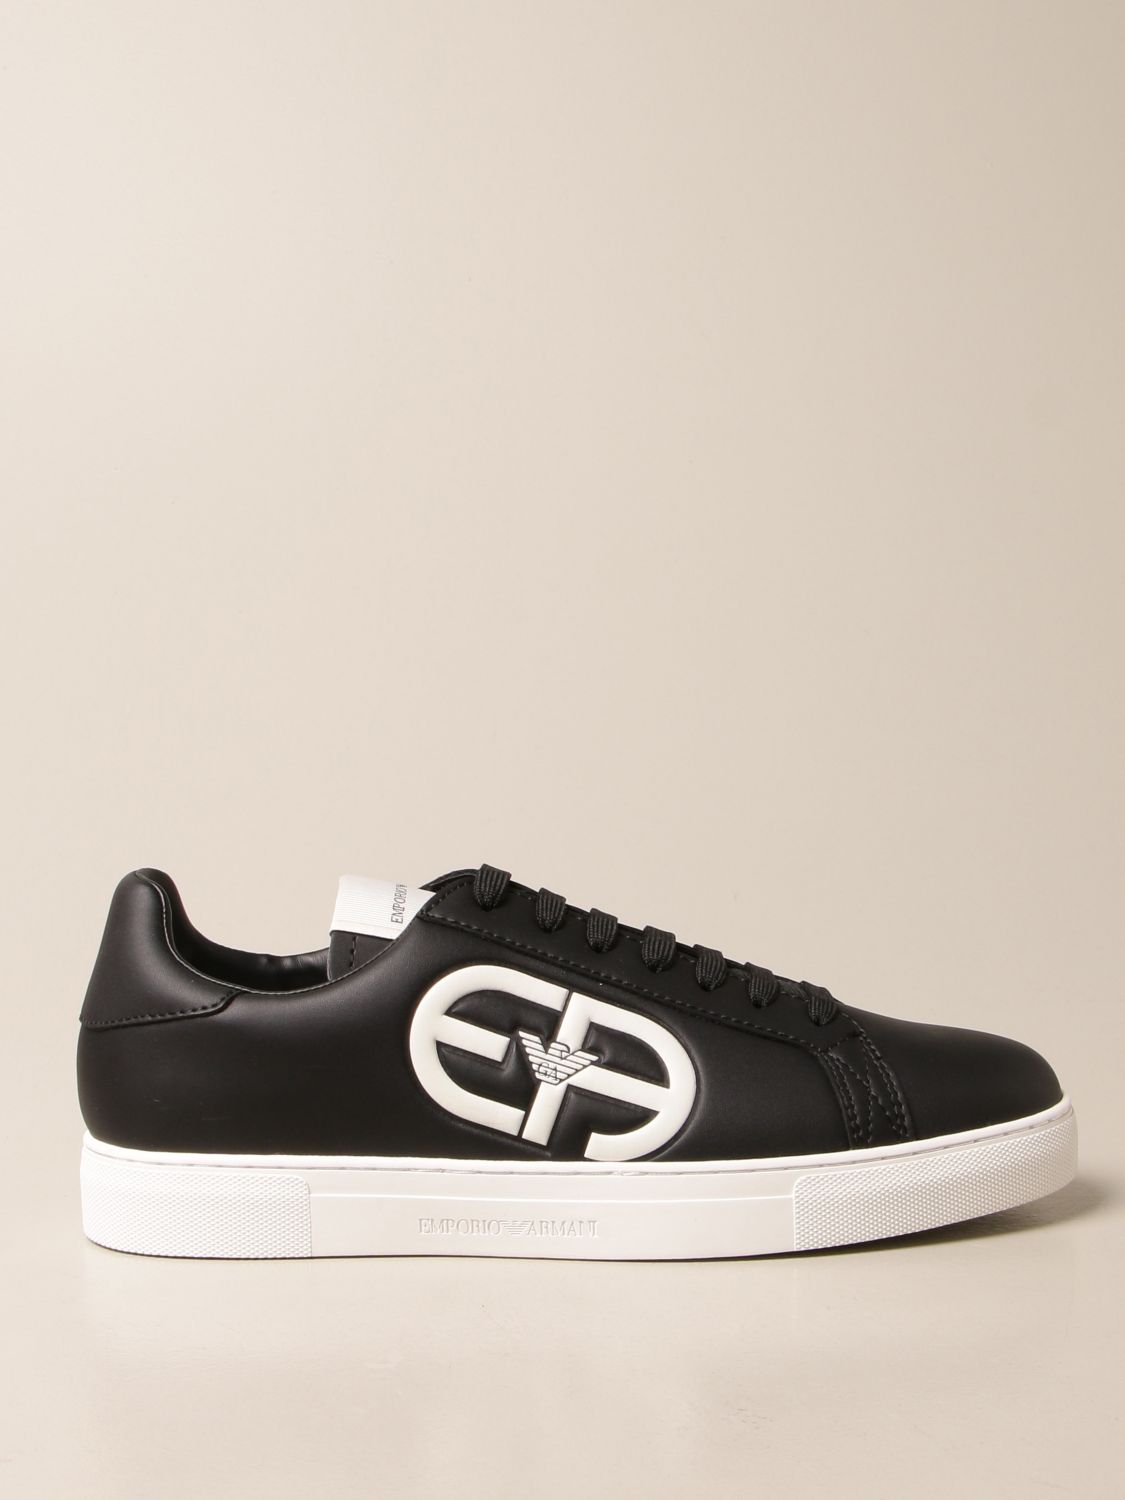 EMPORIO ARMANI: sneakers in leather - Black | Emporio Armani sneakers ...